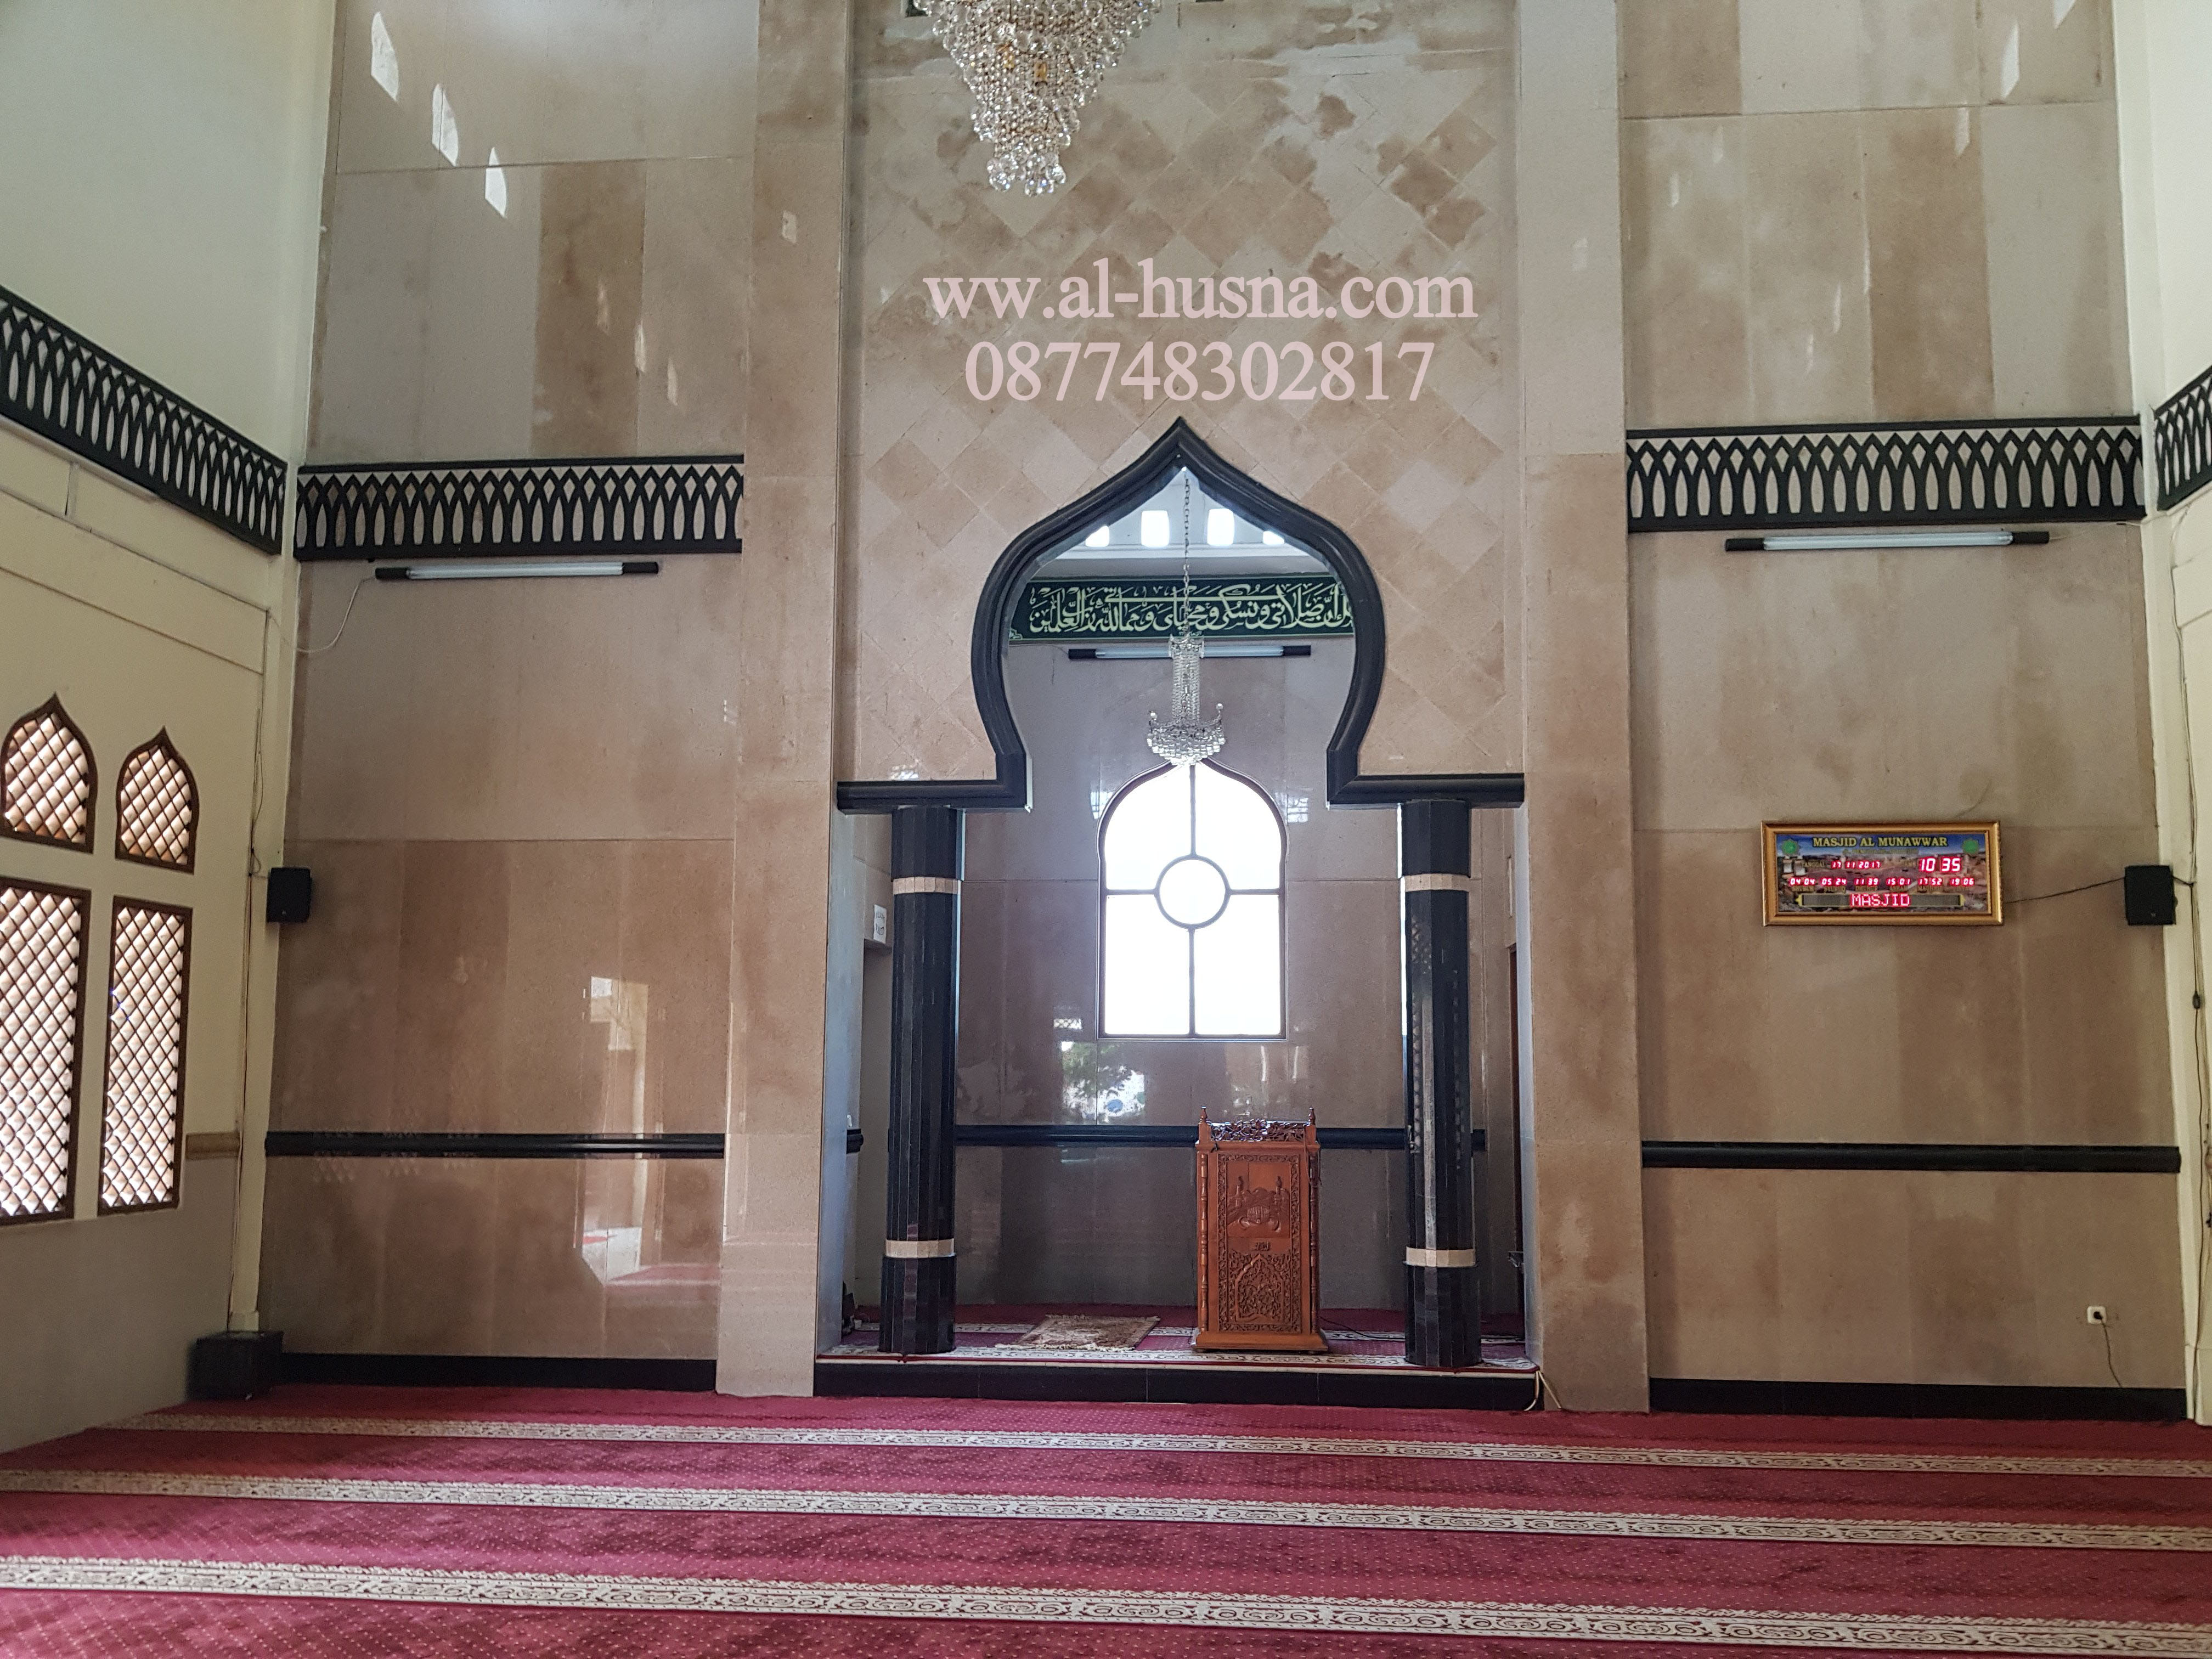 Jual Karpet Masjid Turki Per Roll Di Lenggahjaya Bekasi Jawa Barat